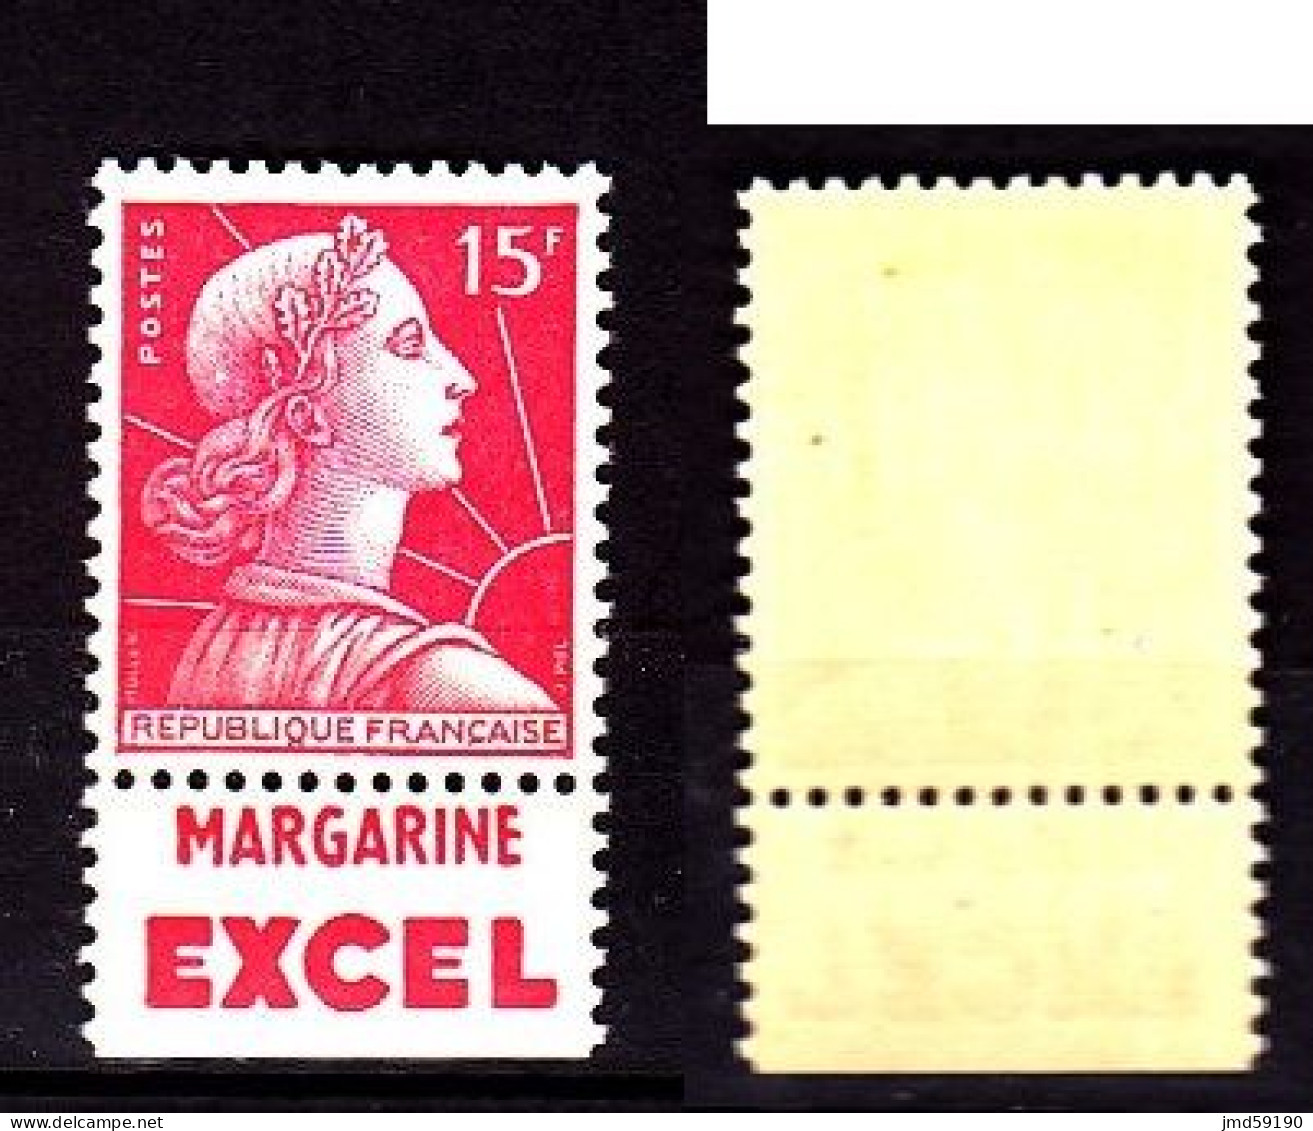 Timbre Neuf ** 1011 Marianne De Muller 15fr Rouge Carminé, Avec Bande Publicitaire EXCEL - Unused Stamps